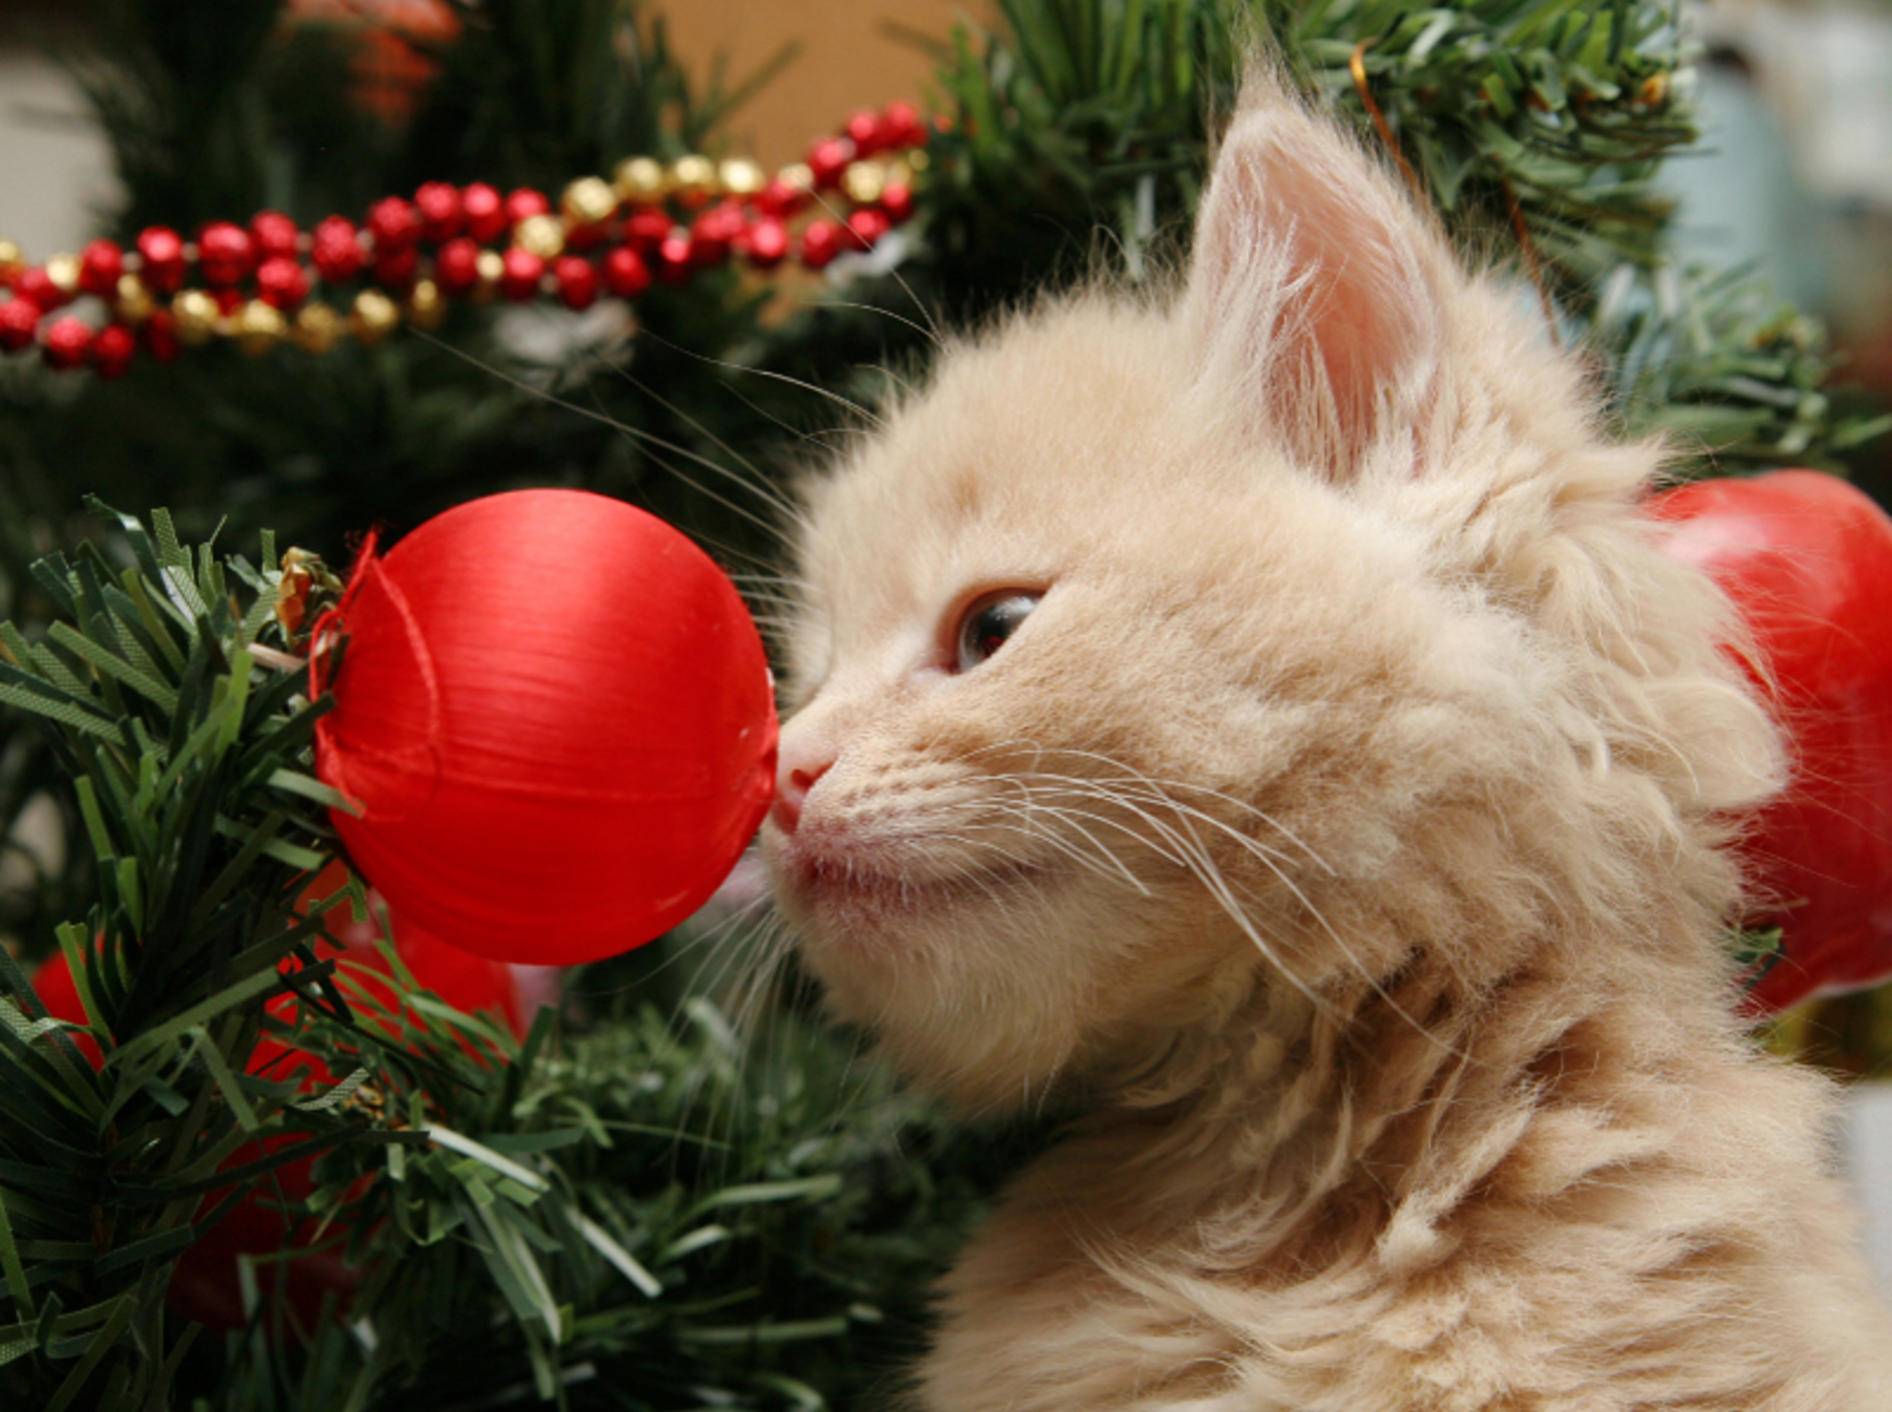 Weihnachtsdeko sollte unbedingt bruchsicher und ungefährlich sein – Shutterstock / Sue McDonald